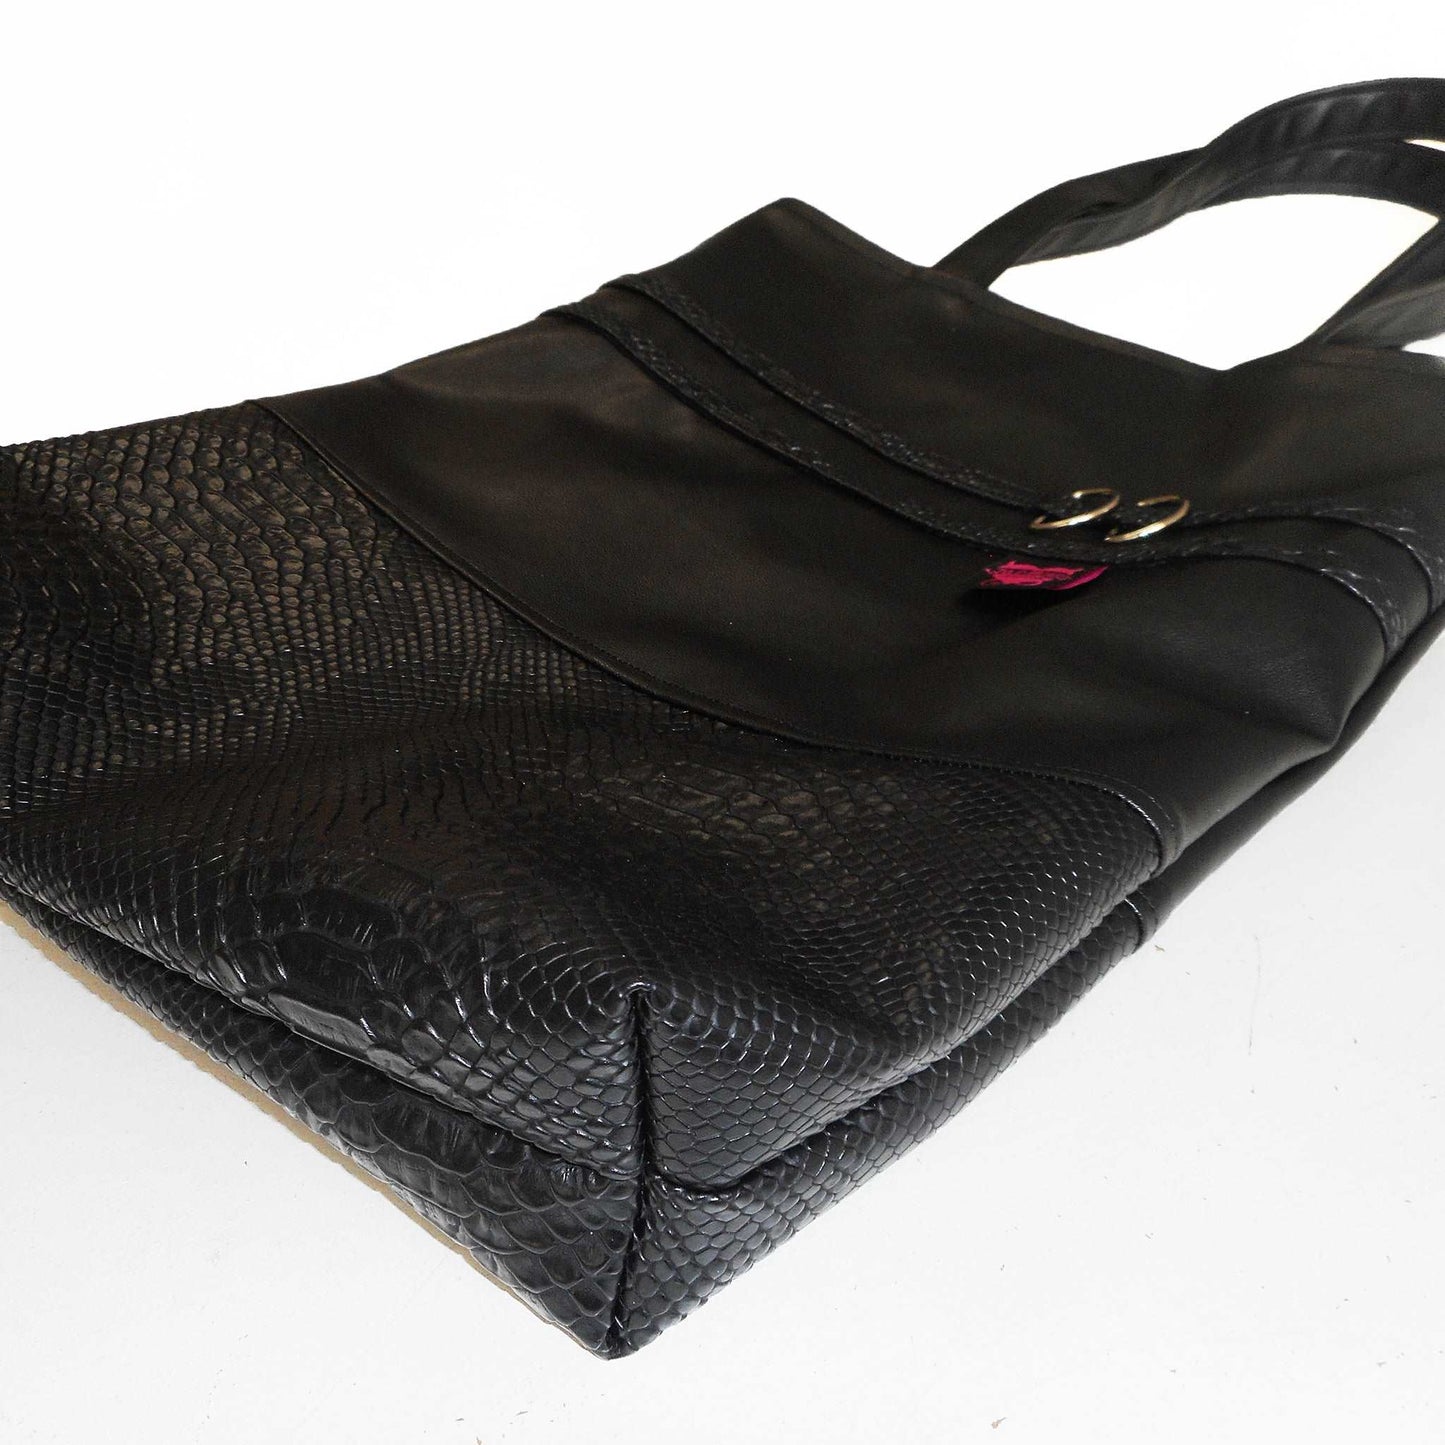 handgemachtes einzelstück. Tote Tasche aus schwarzem Ledermitat kombiniert mit Lederimitat in Schlangenoptik und gestreiftem Futter in Gelb und Schwarz.